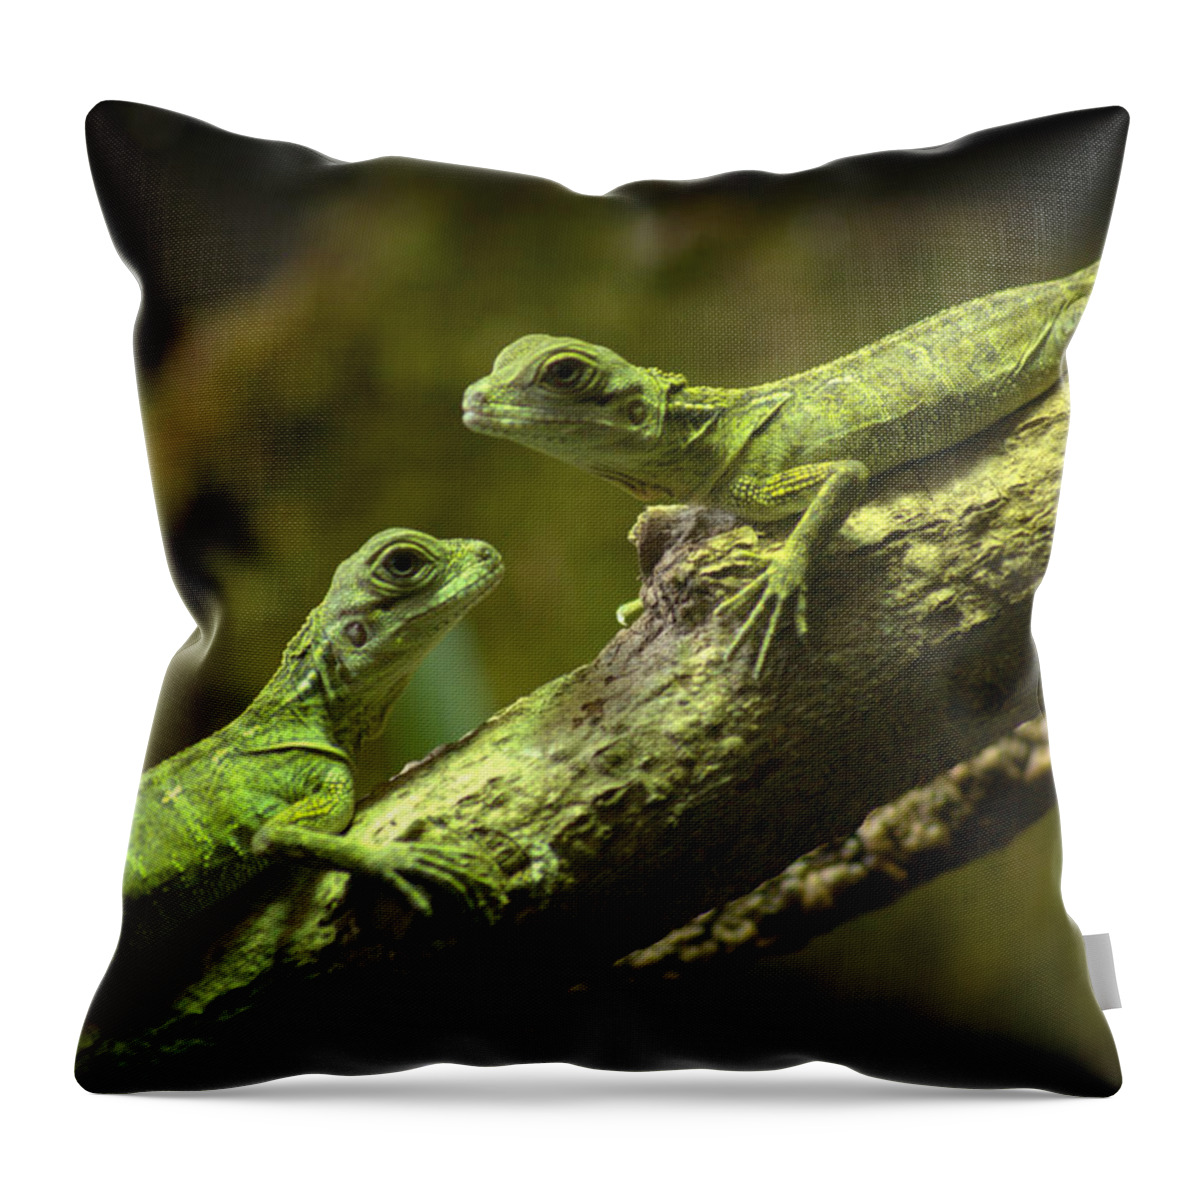 Lizard Throw Pillow featuring the photograph Weber's Sailfin Lizards by Nathan Abbott